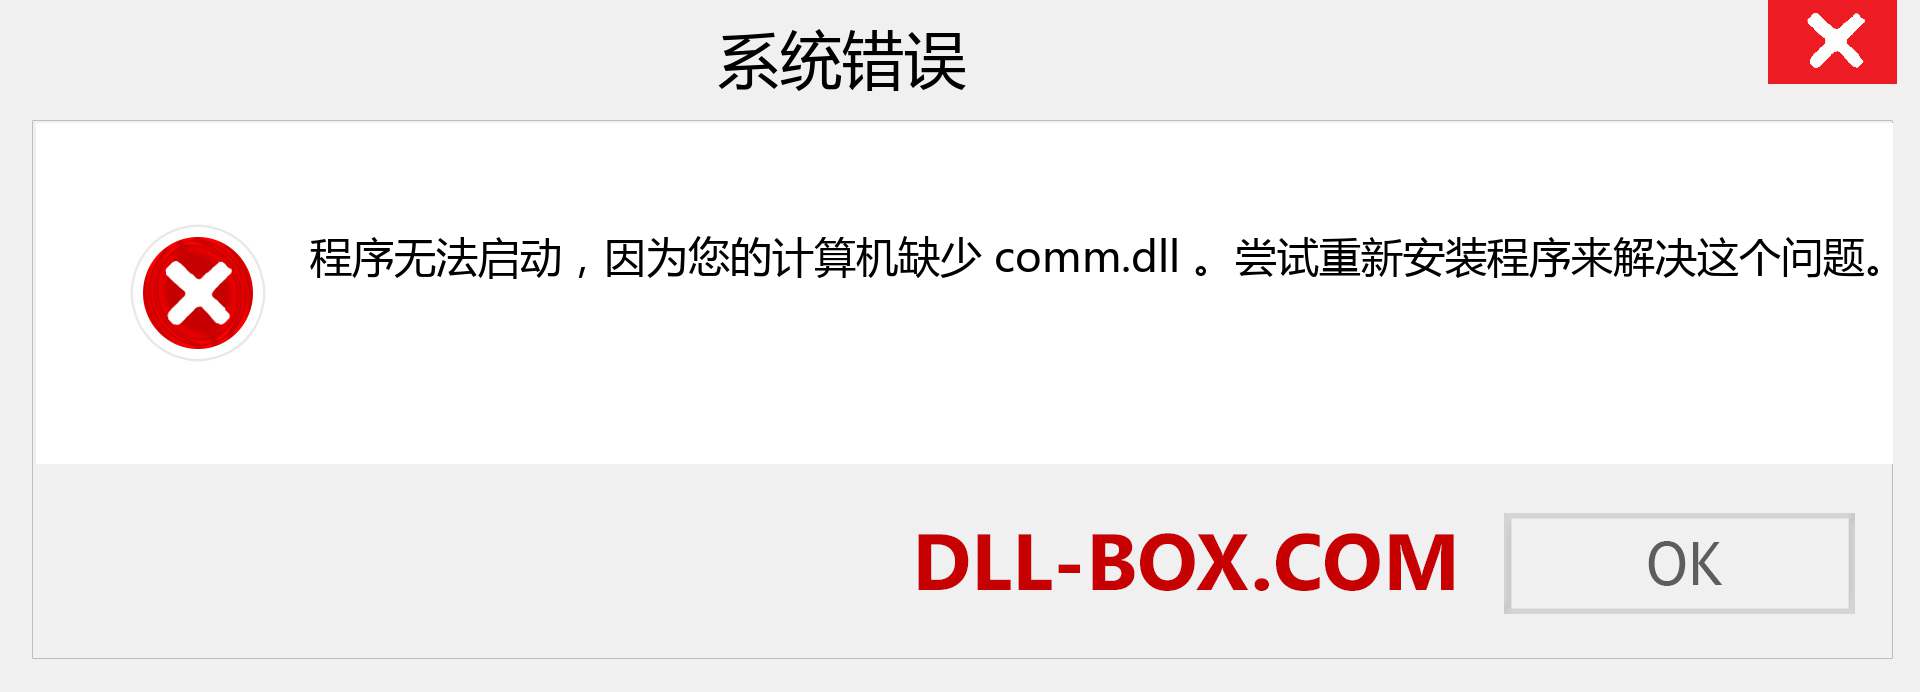 comm.dll 文件丢失？。 适用于 Windows 7、8、10 的下载 - 修复 Windows、照片、图像上的 comm dll 丢失错误